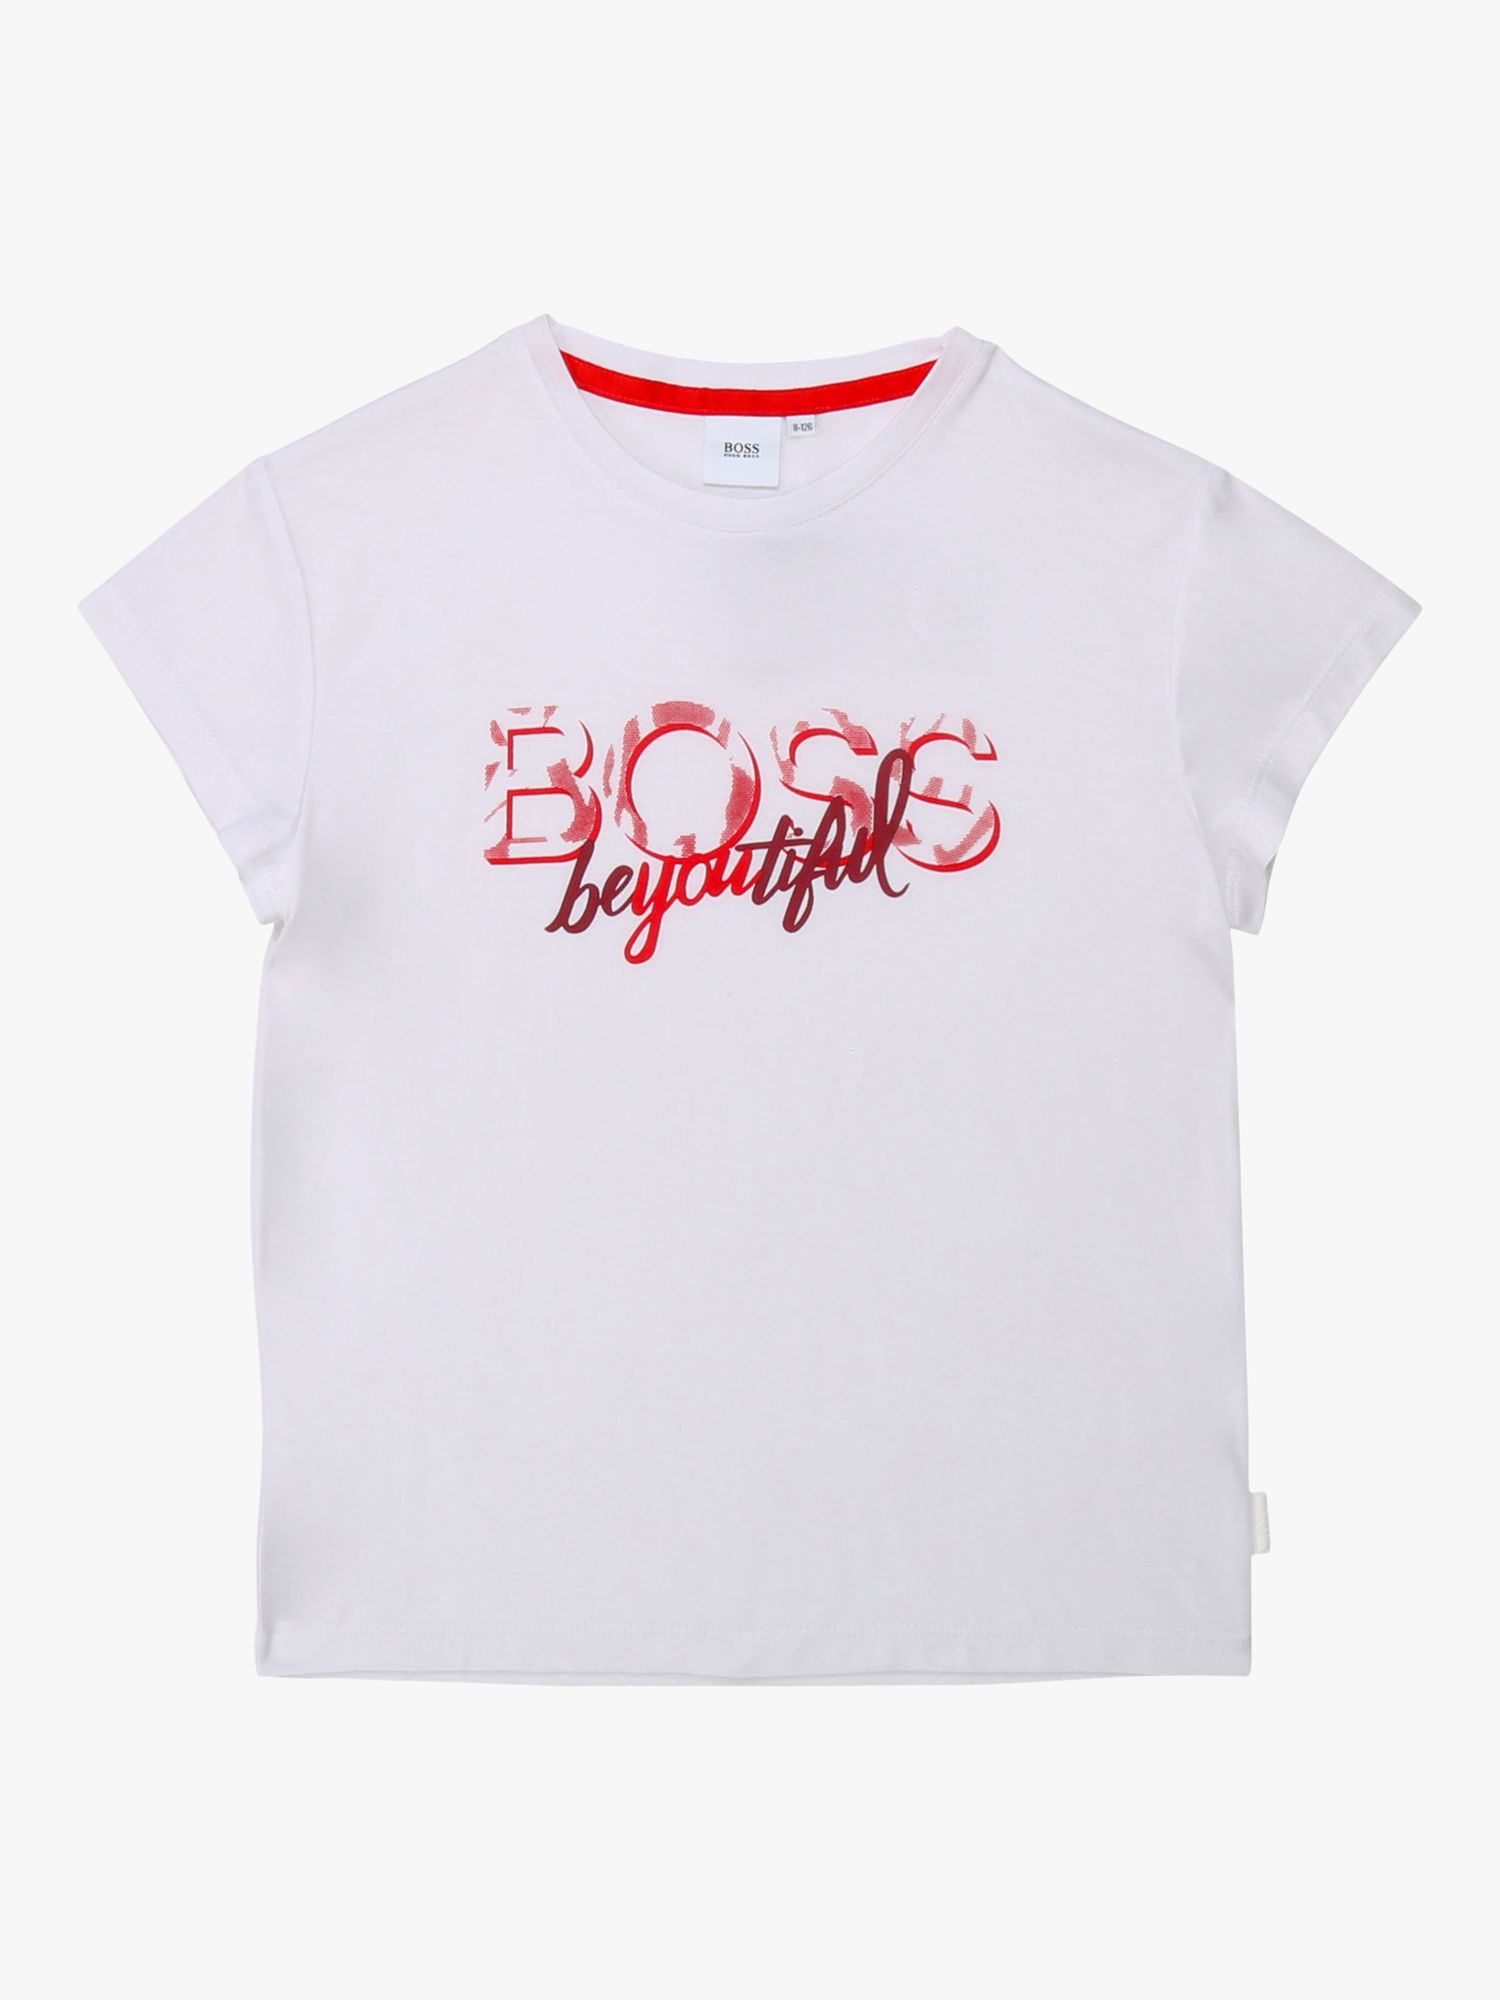 HUGO BOSS Girls' Printed T-Shirt, White